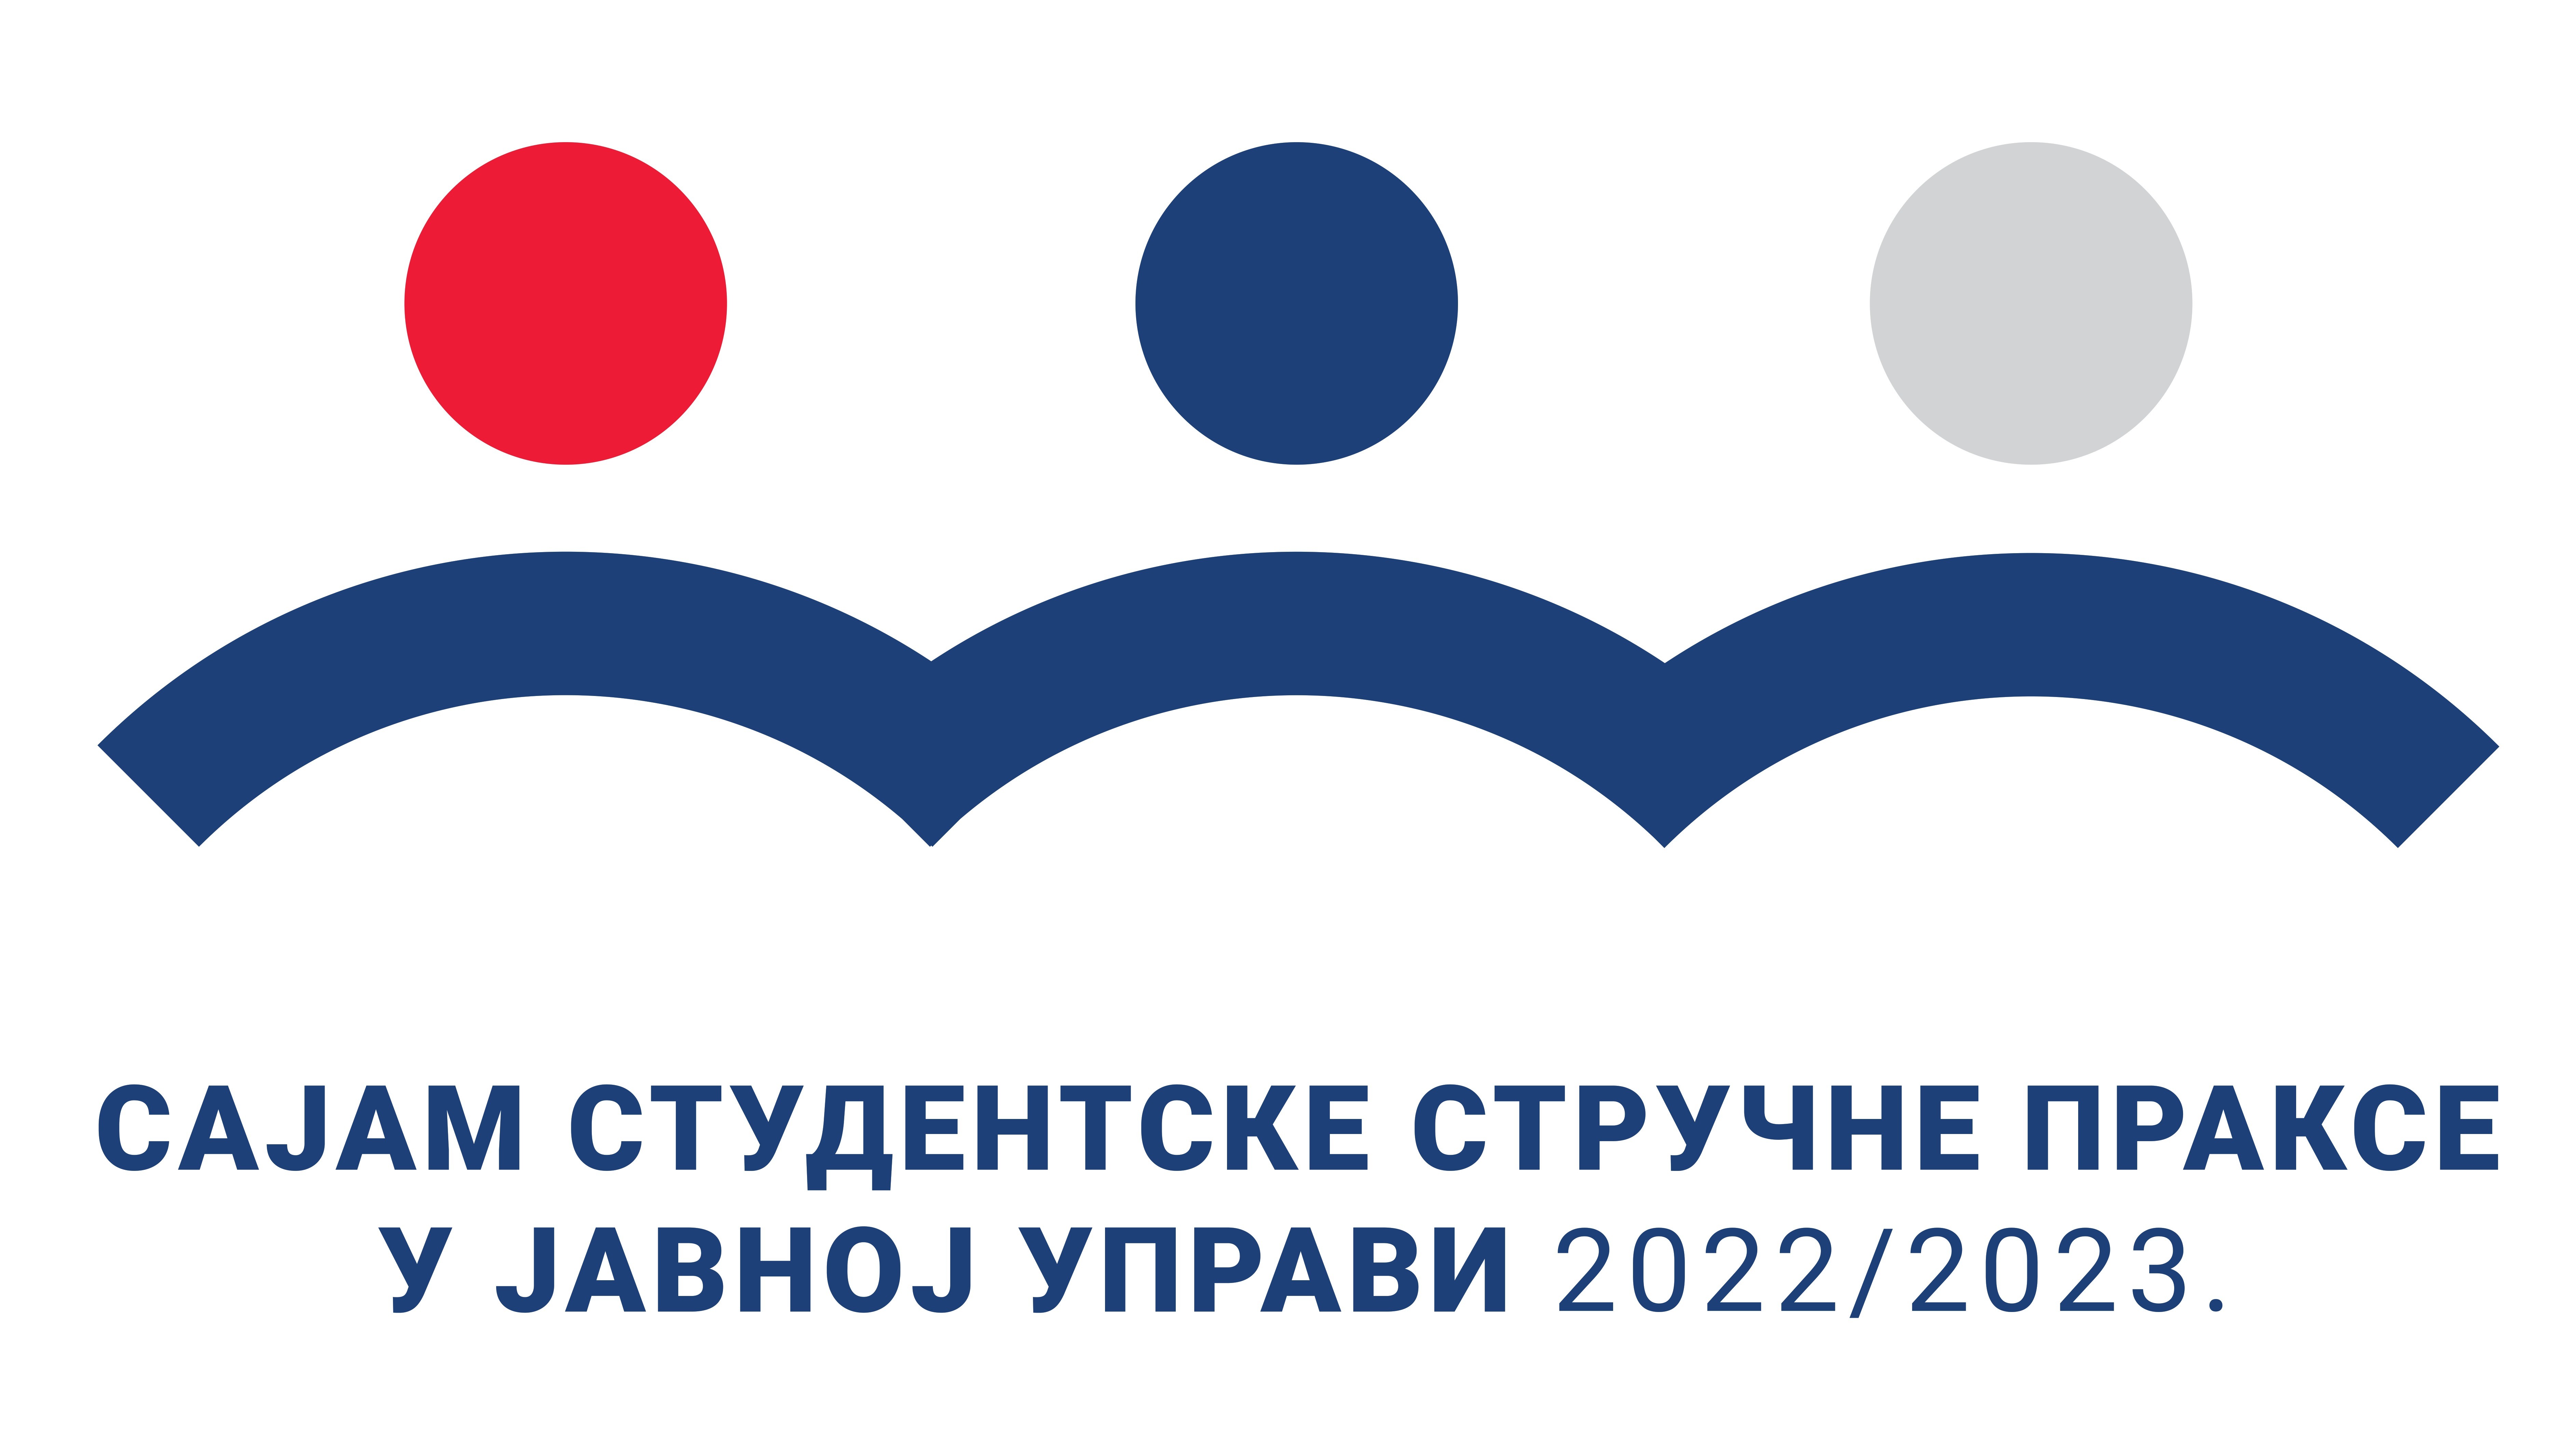 Uputstvo za korišćenje platforme Sajam studentske stručne prakse u javnoj upravi 2022/2023